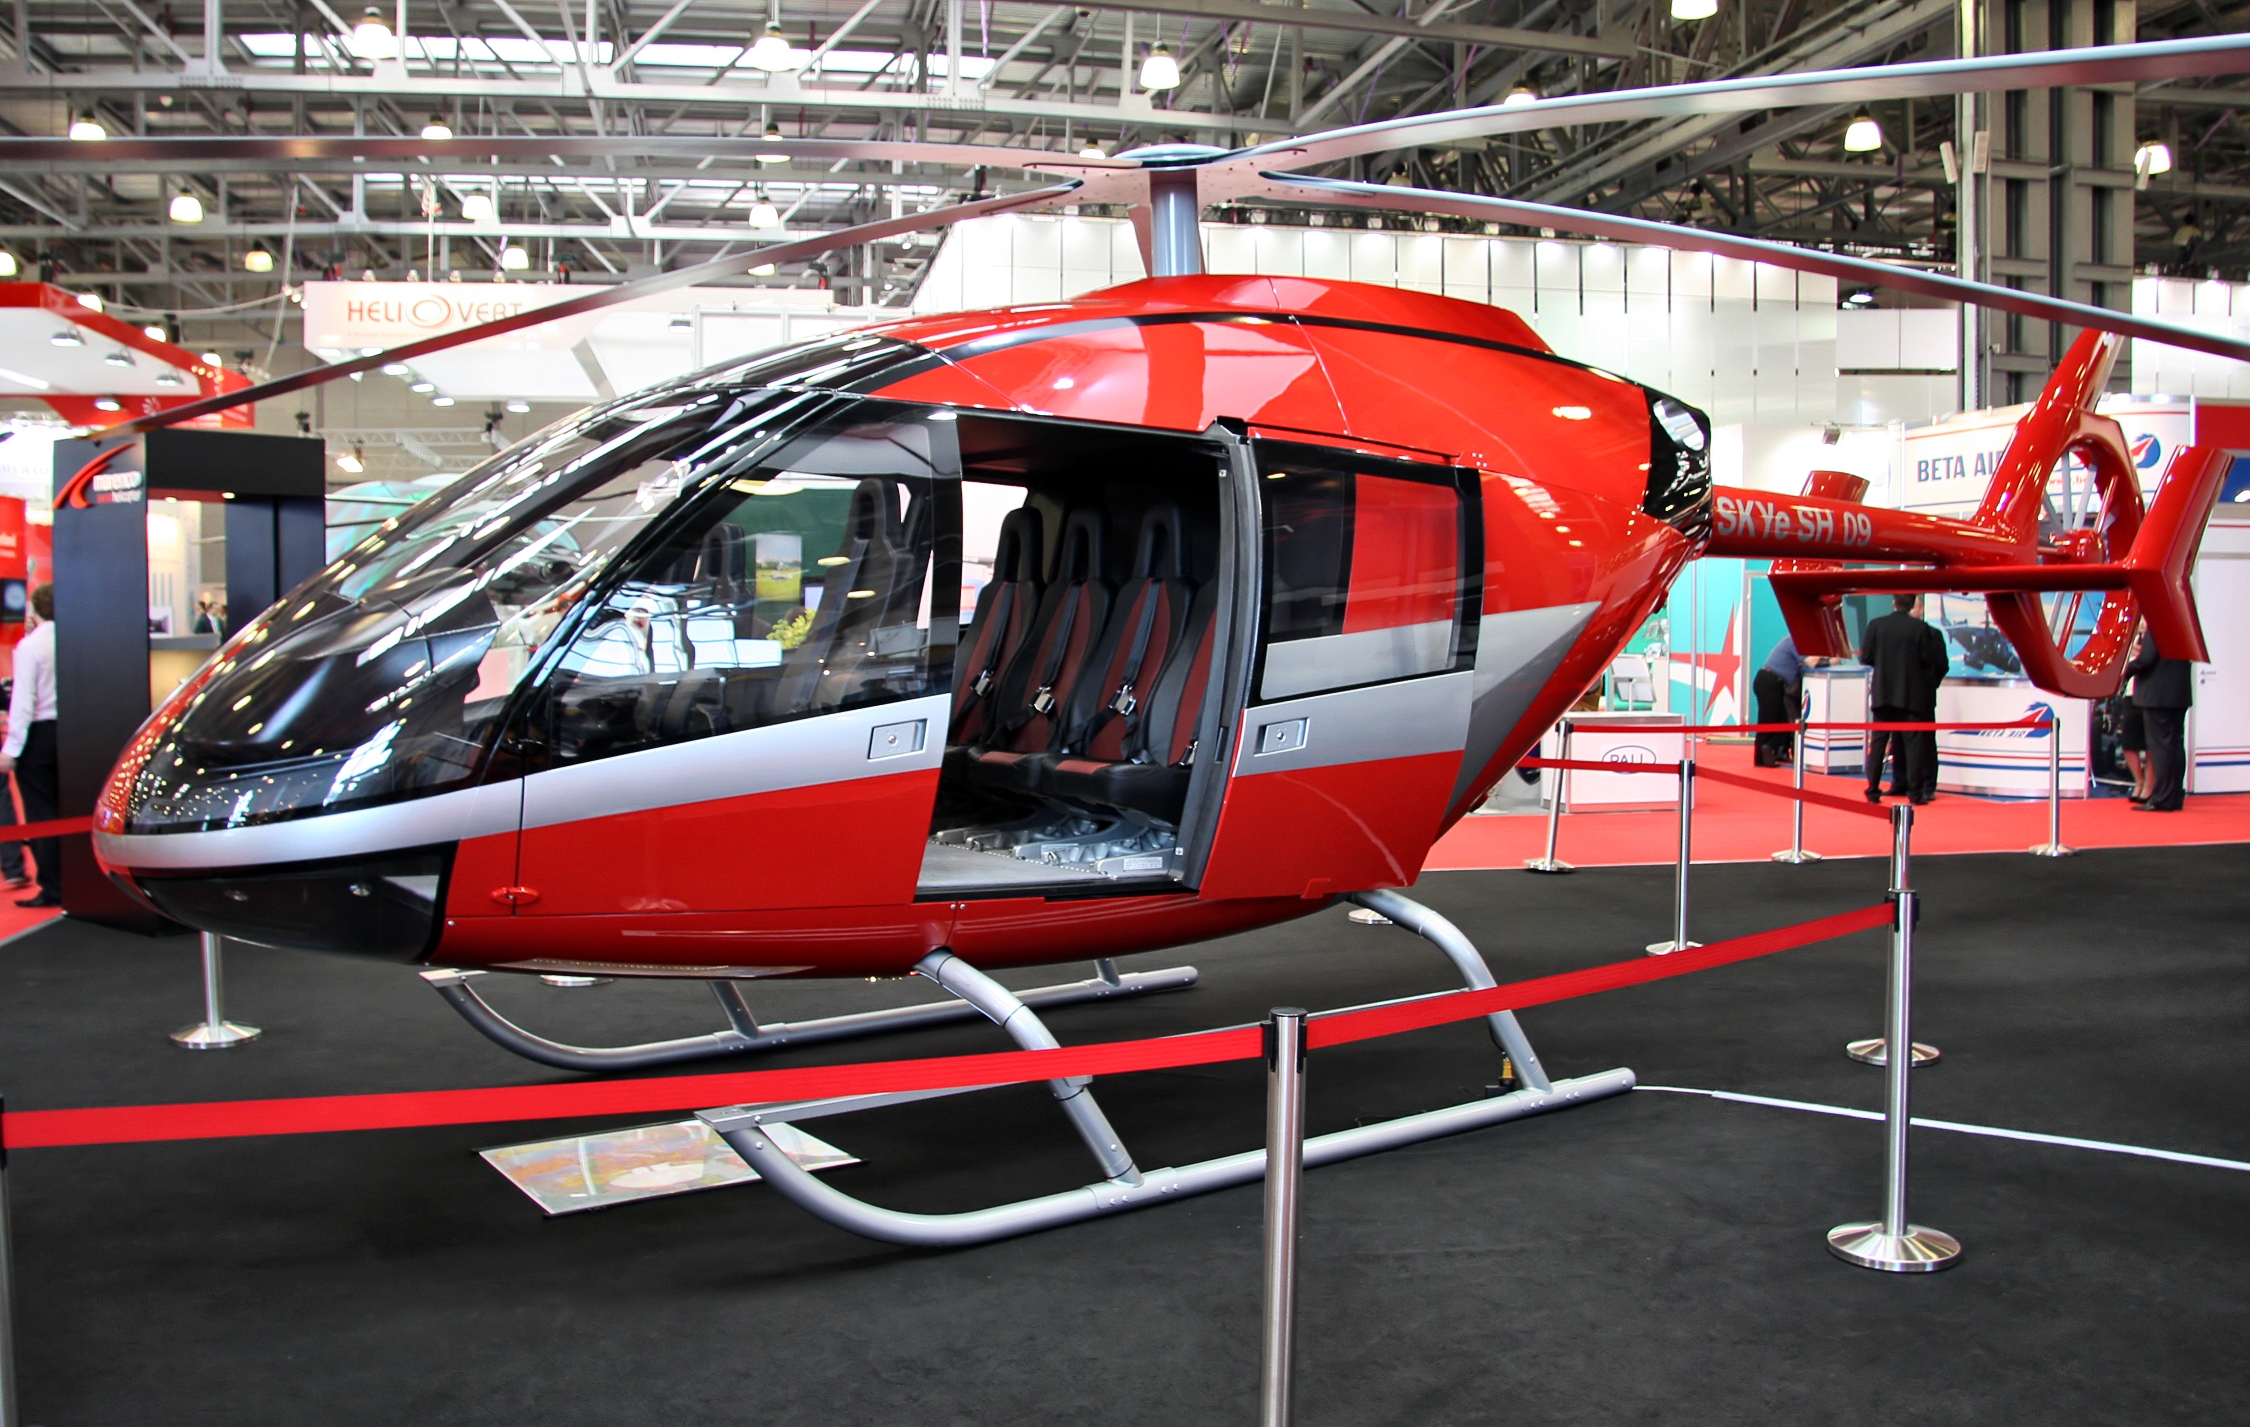 Marenco SKYe SH09 1:1-Modell als Ausstellungsstück auf der "Heli Expo 2011" - Foto: Vitaly Kuzmin